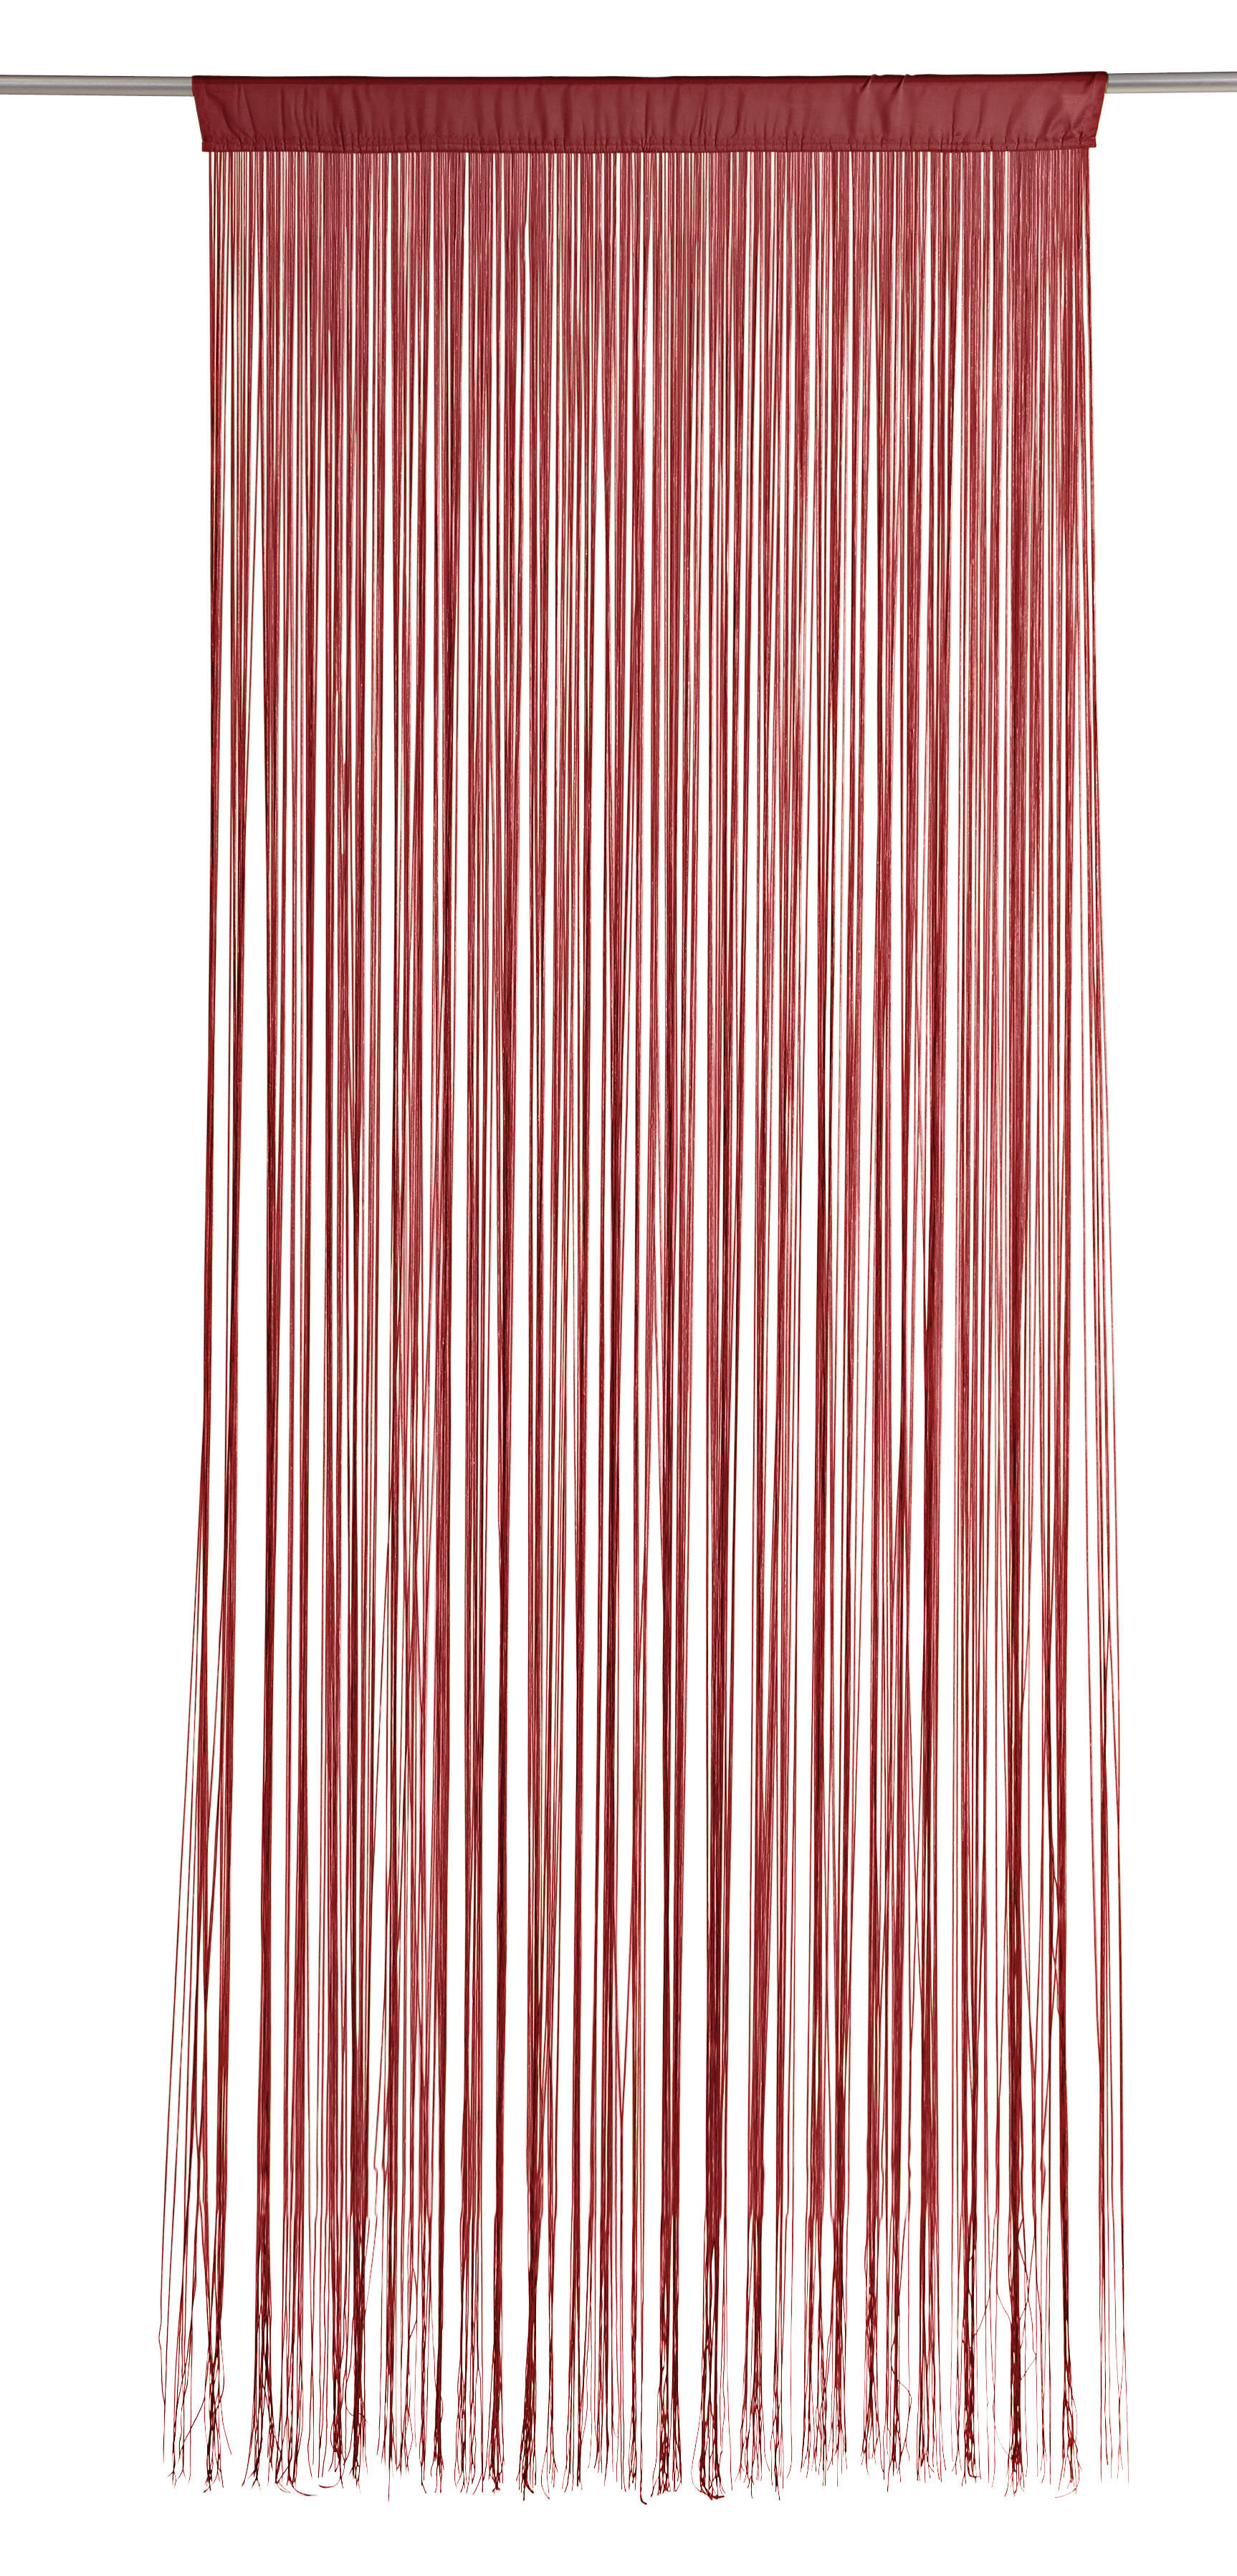 KONČANA ZAVESA crvena - crvena, Konvencionalno, tekstil (90/245cm) - Boxxx